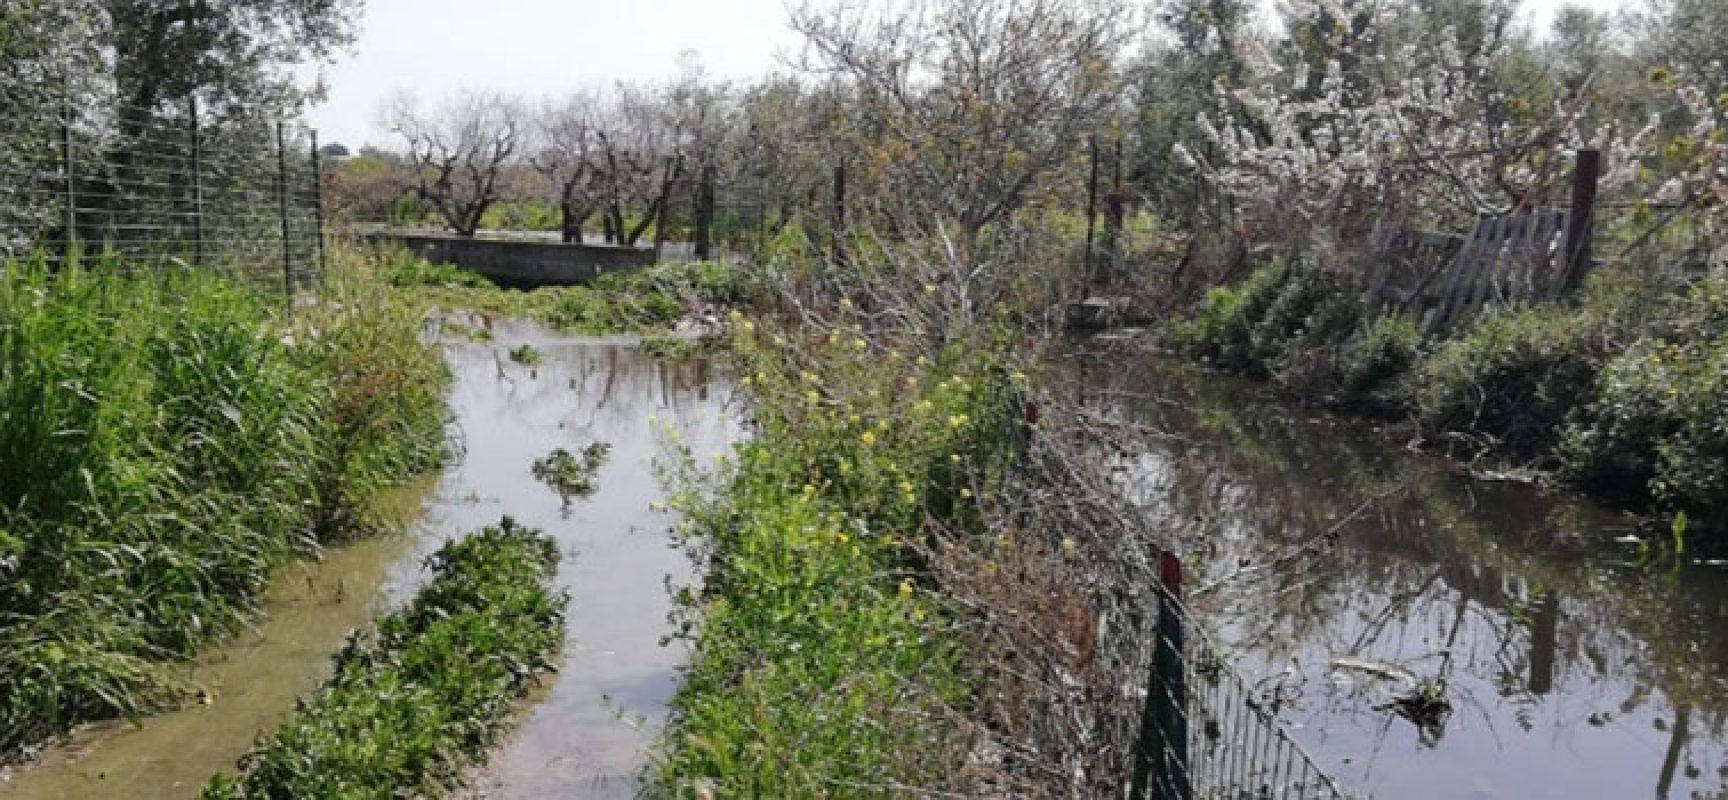 Bisceglie D’Amare segnala problematiche in zona Lama di Macina, “Canale inonda terreni con acque nere”